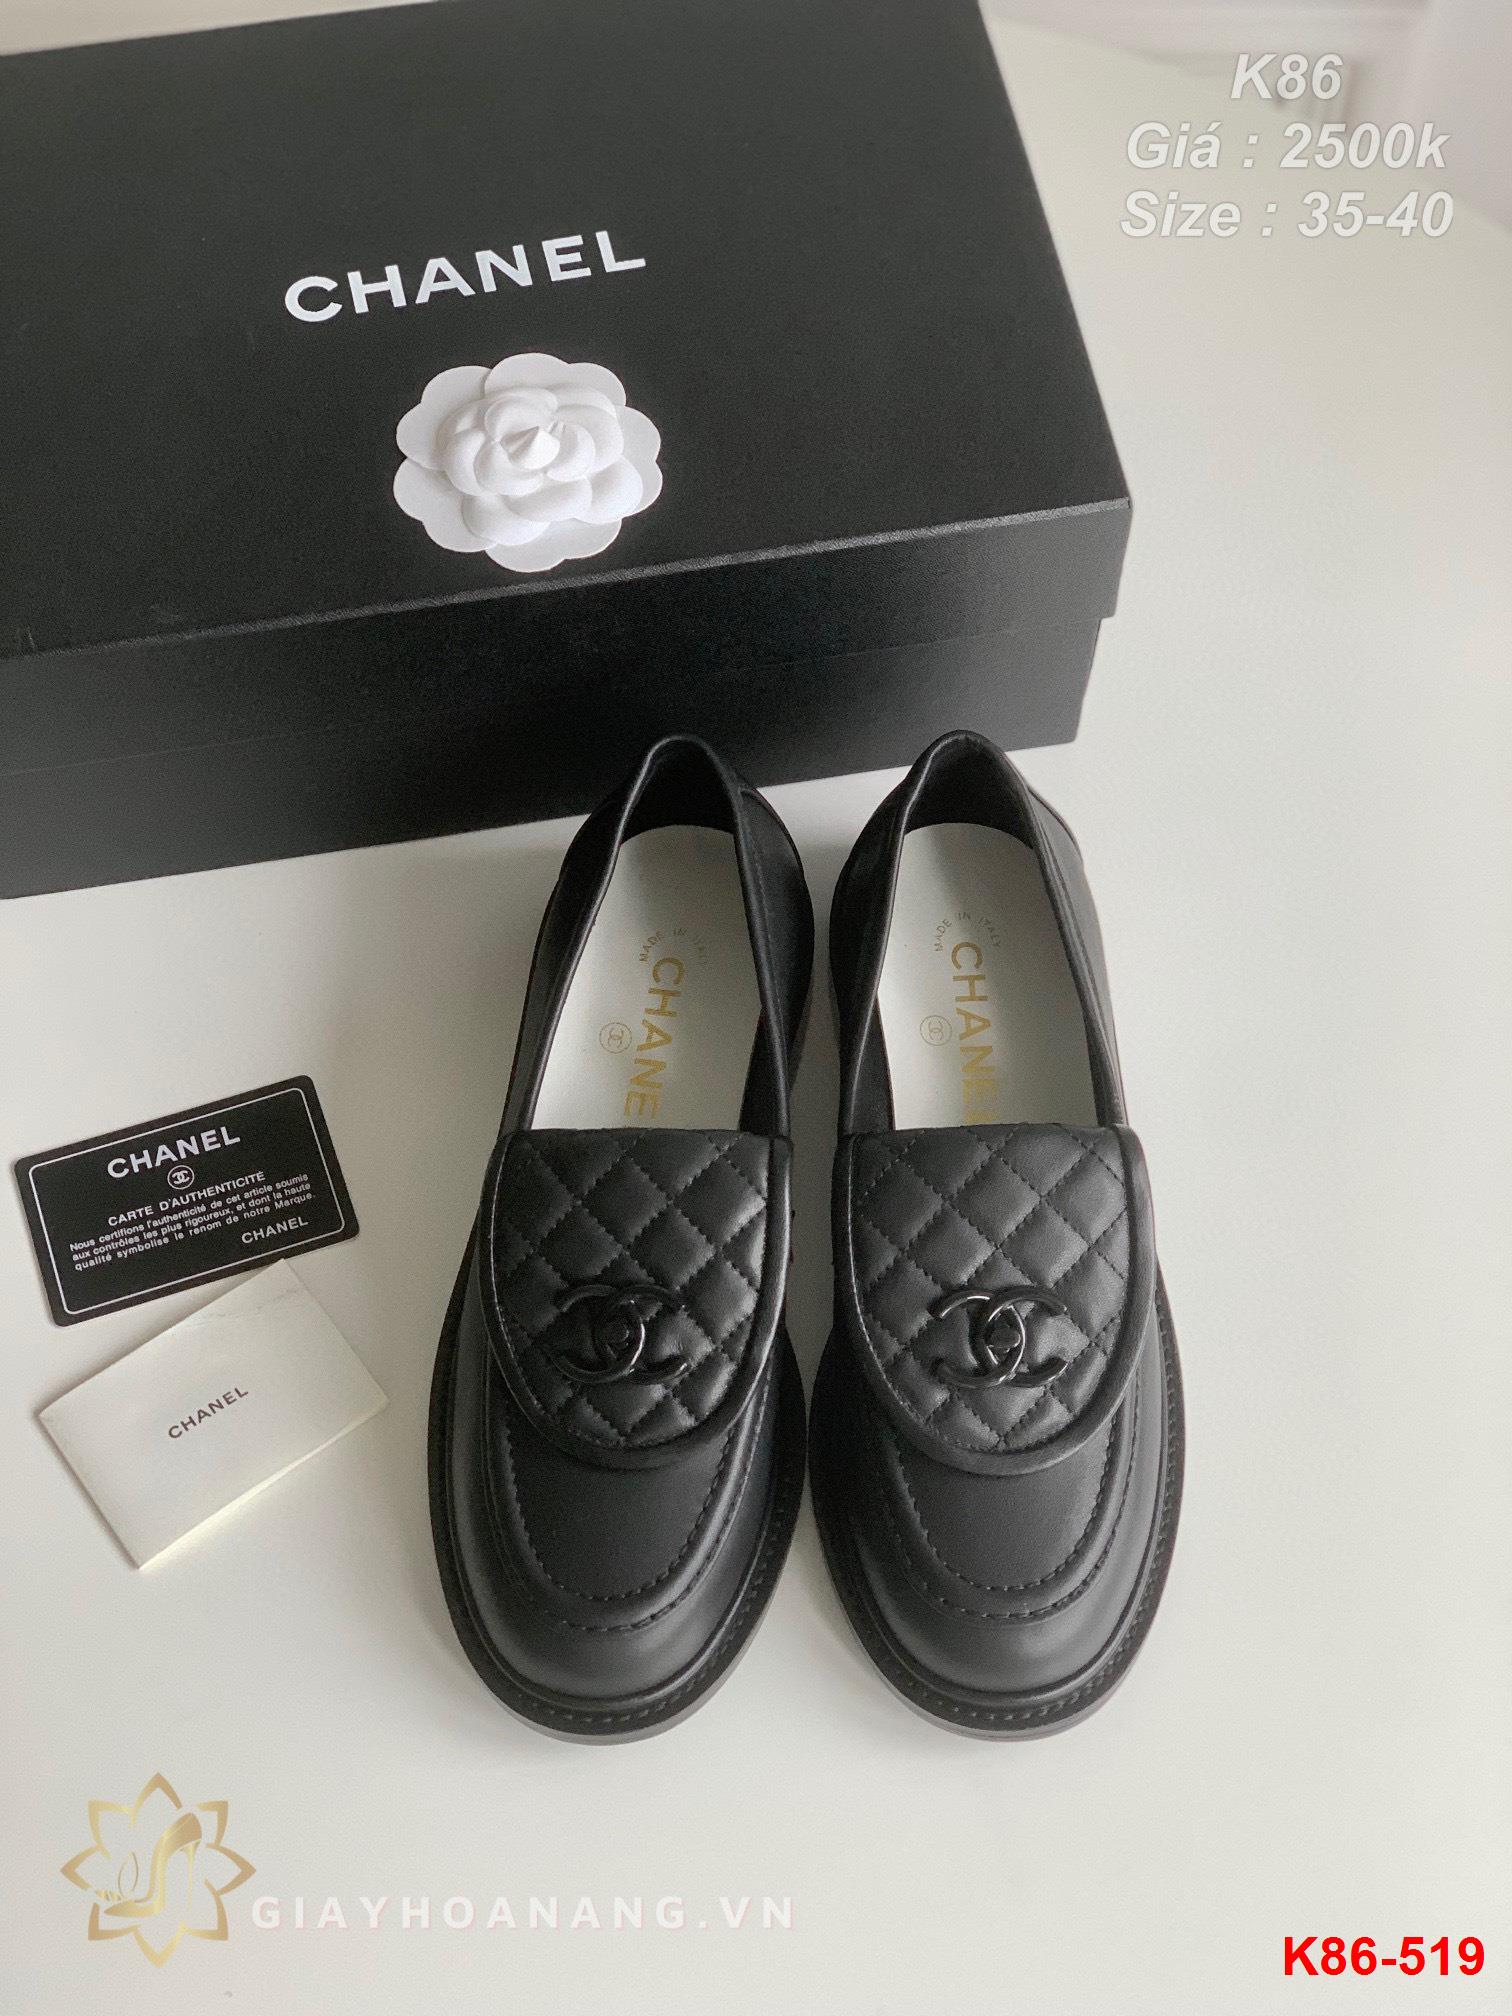 K86-519 Chanel giày lười siêu cấp